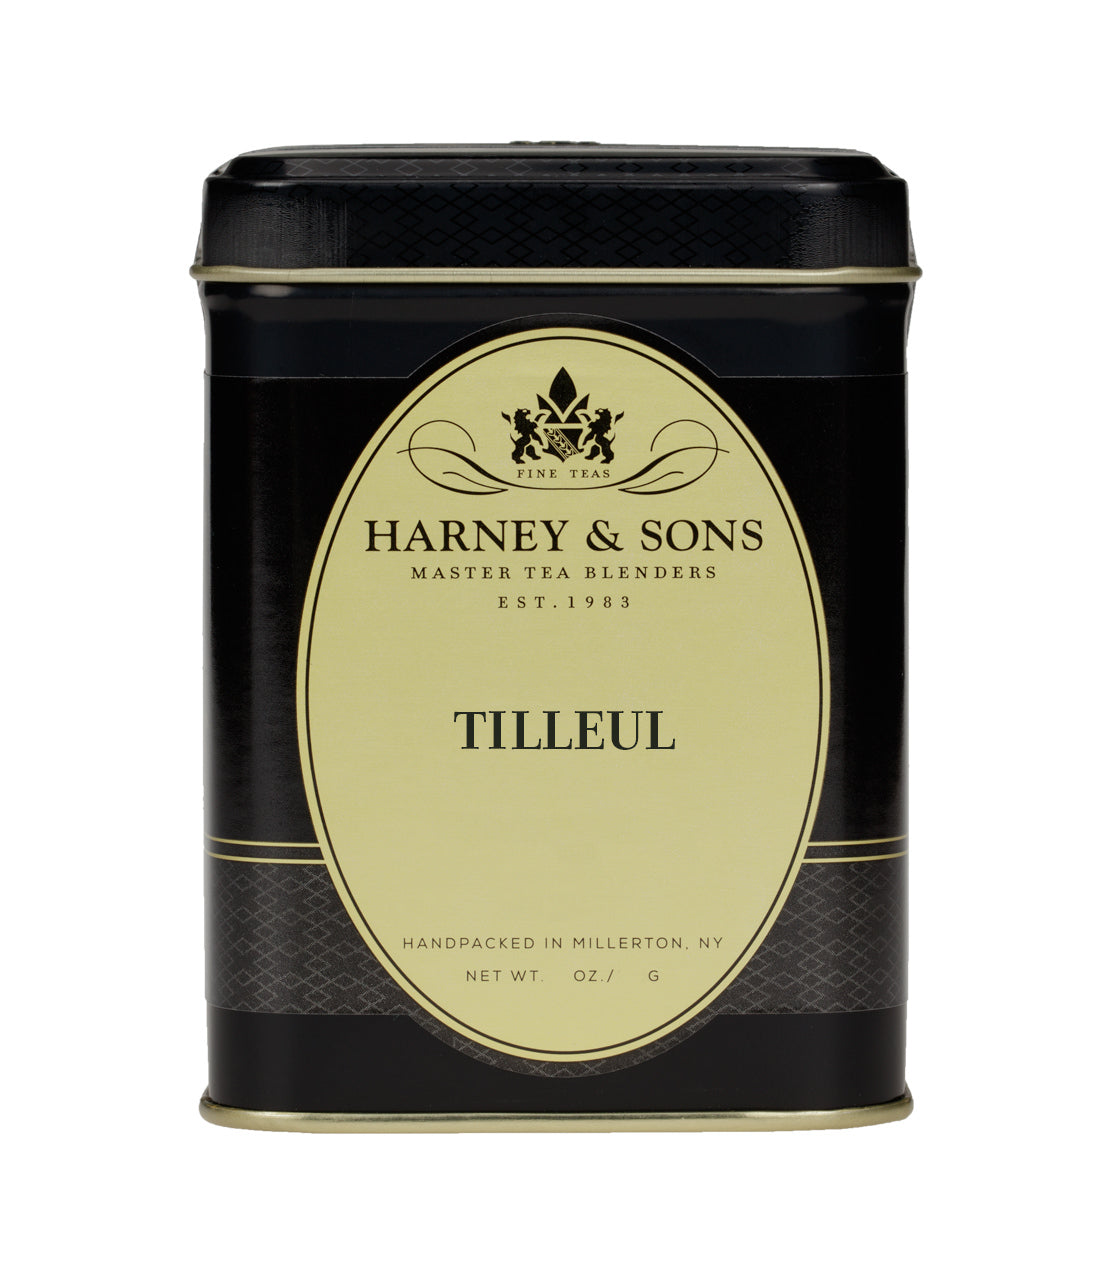 Tilleul (Linden Leaves) - Loose 1 oz. Tin - Harney & Sons Fine Teas